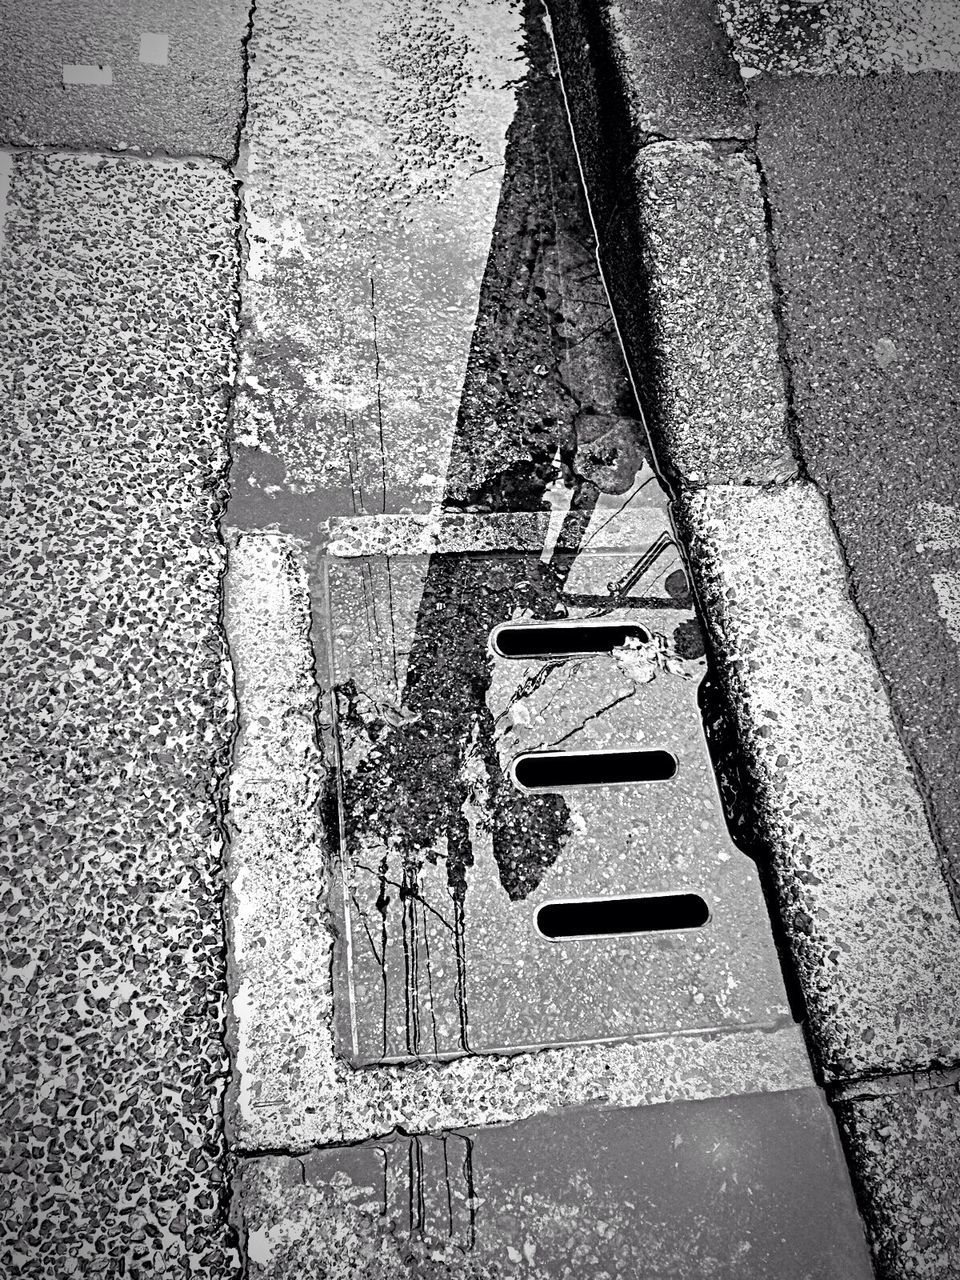 Reflection telephone pole on puddle